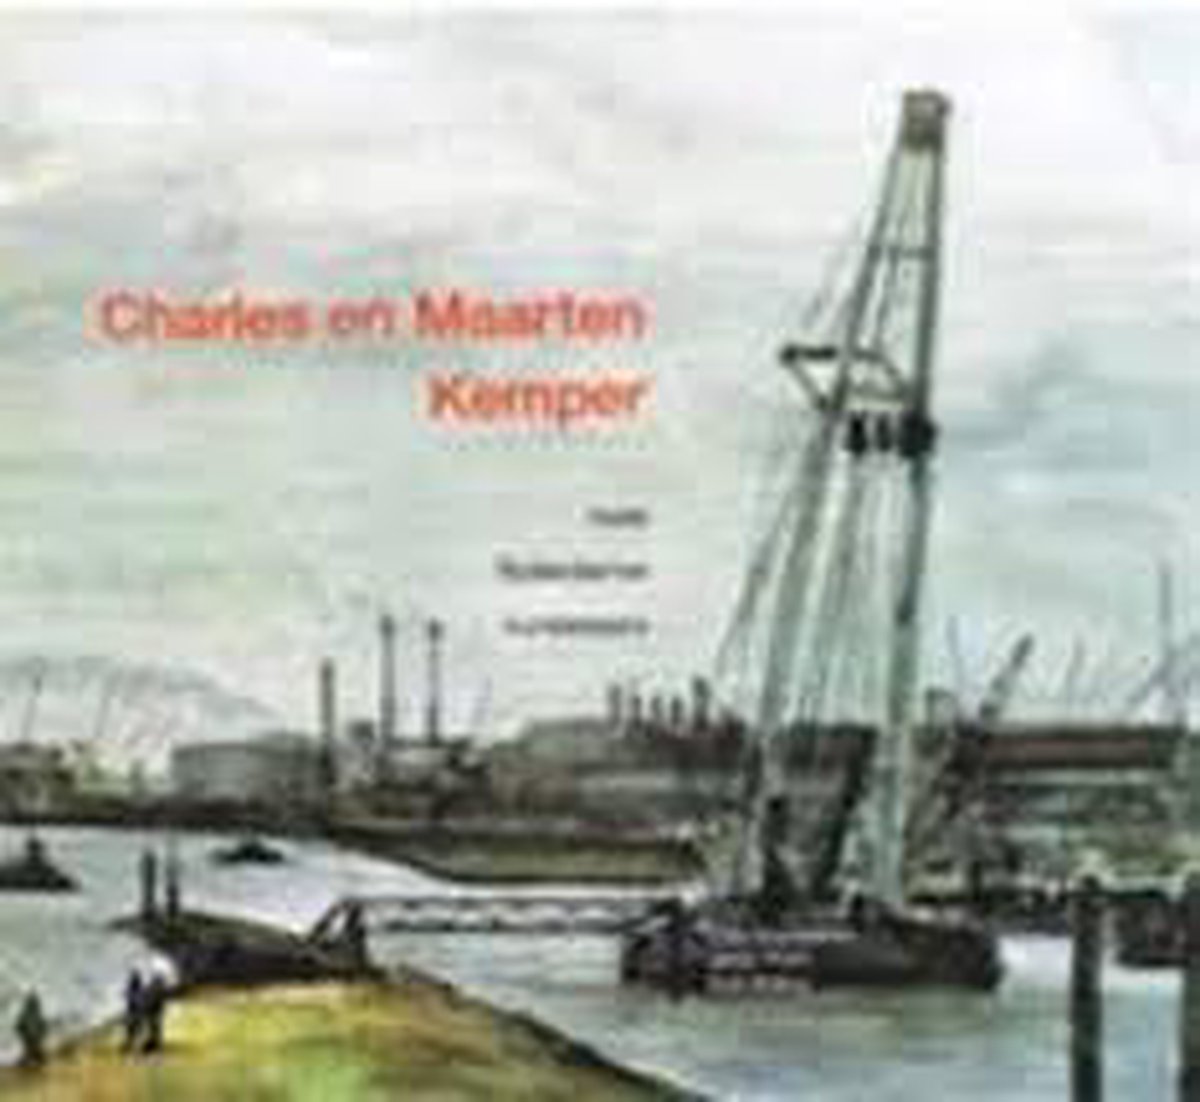 Charles en Maarten Kemper